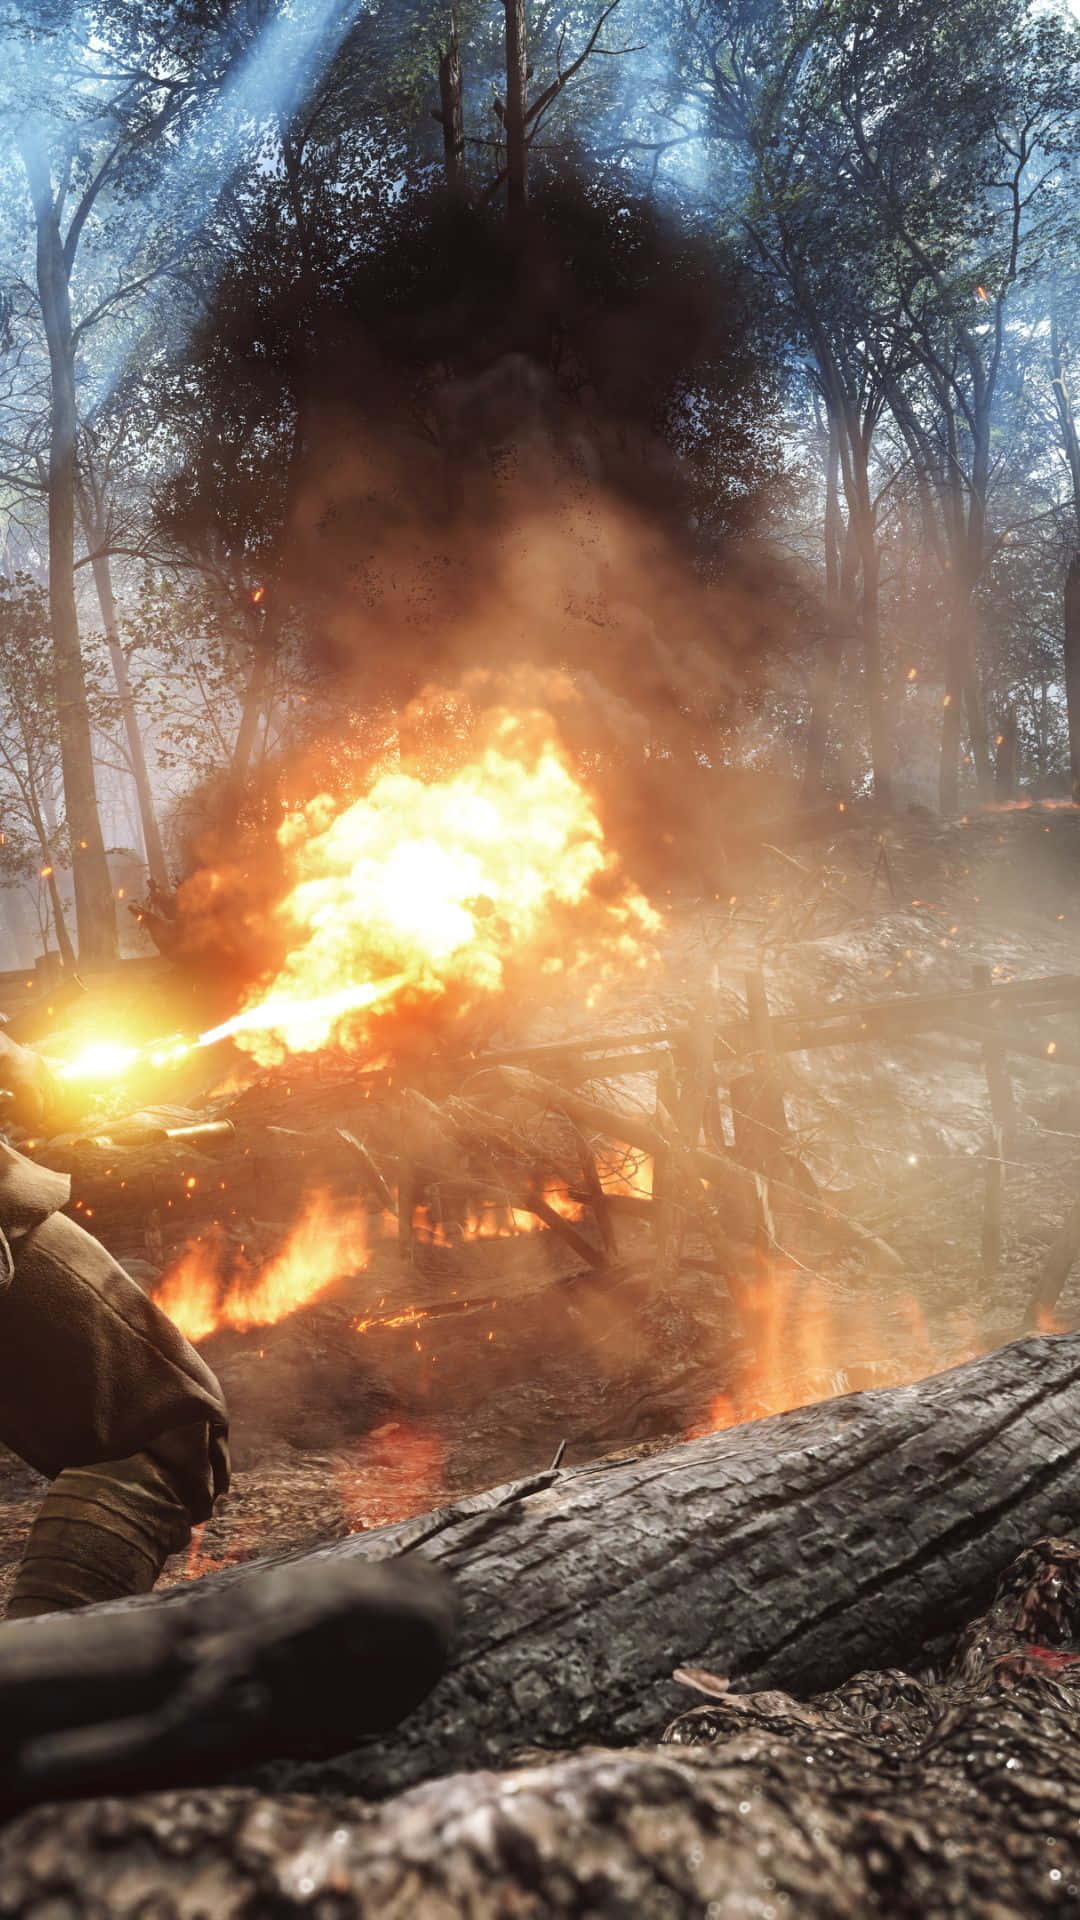 Androidbakgrund Av Battlefield 1 Där En Soldat Skjuter Med En Eldkastare.